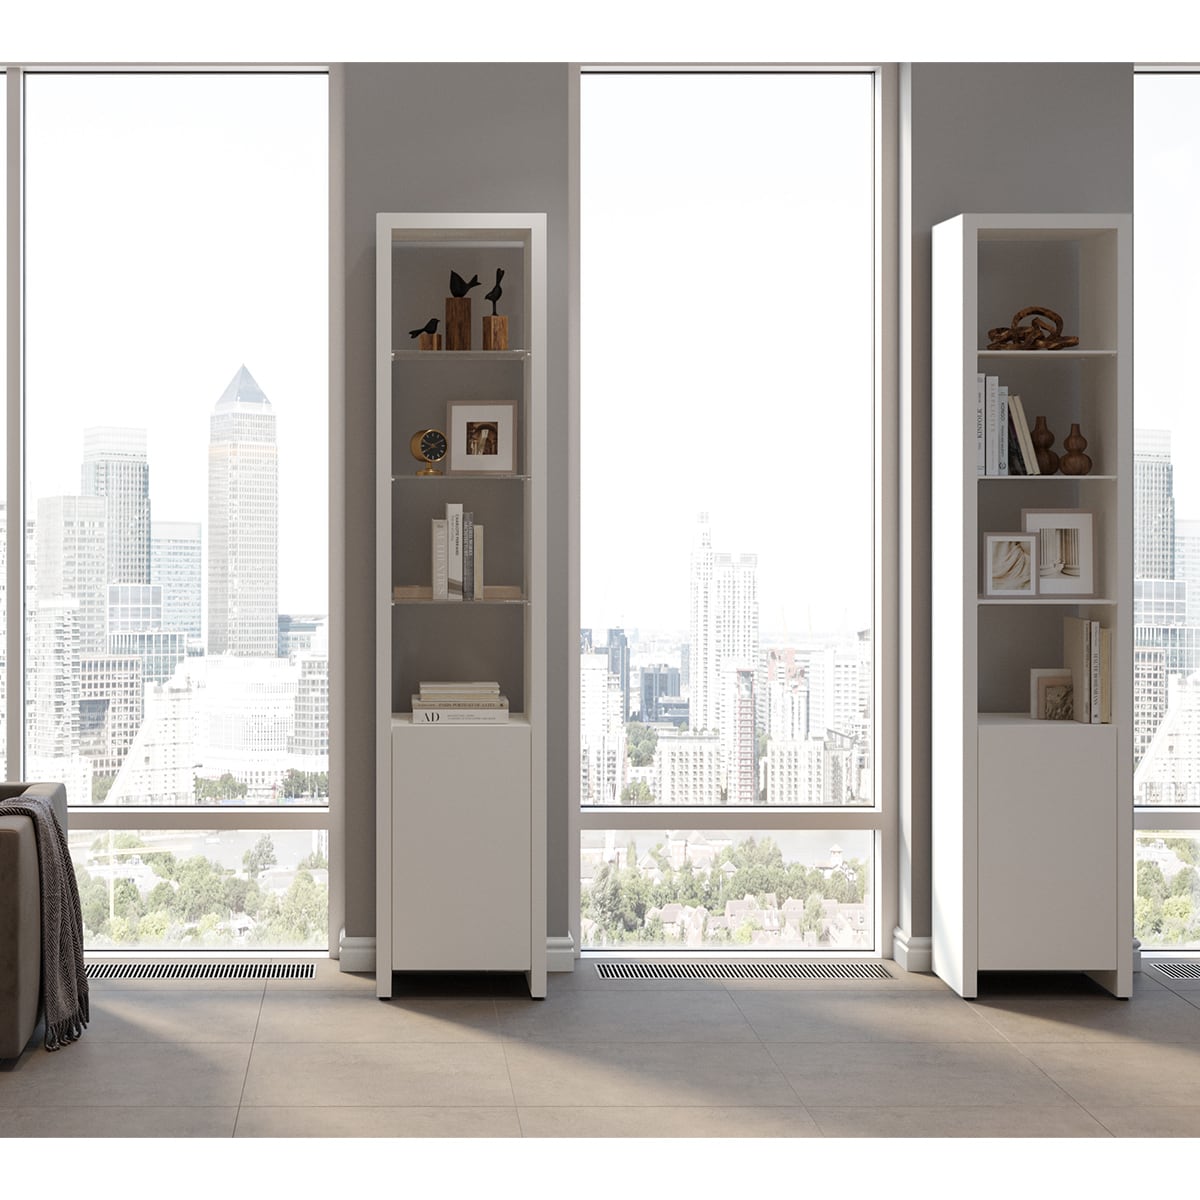 BDI Linea 5801 Single-Wide Cabinet (Satin White)